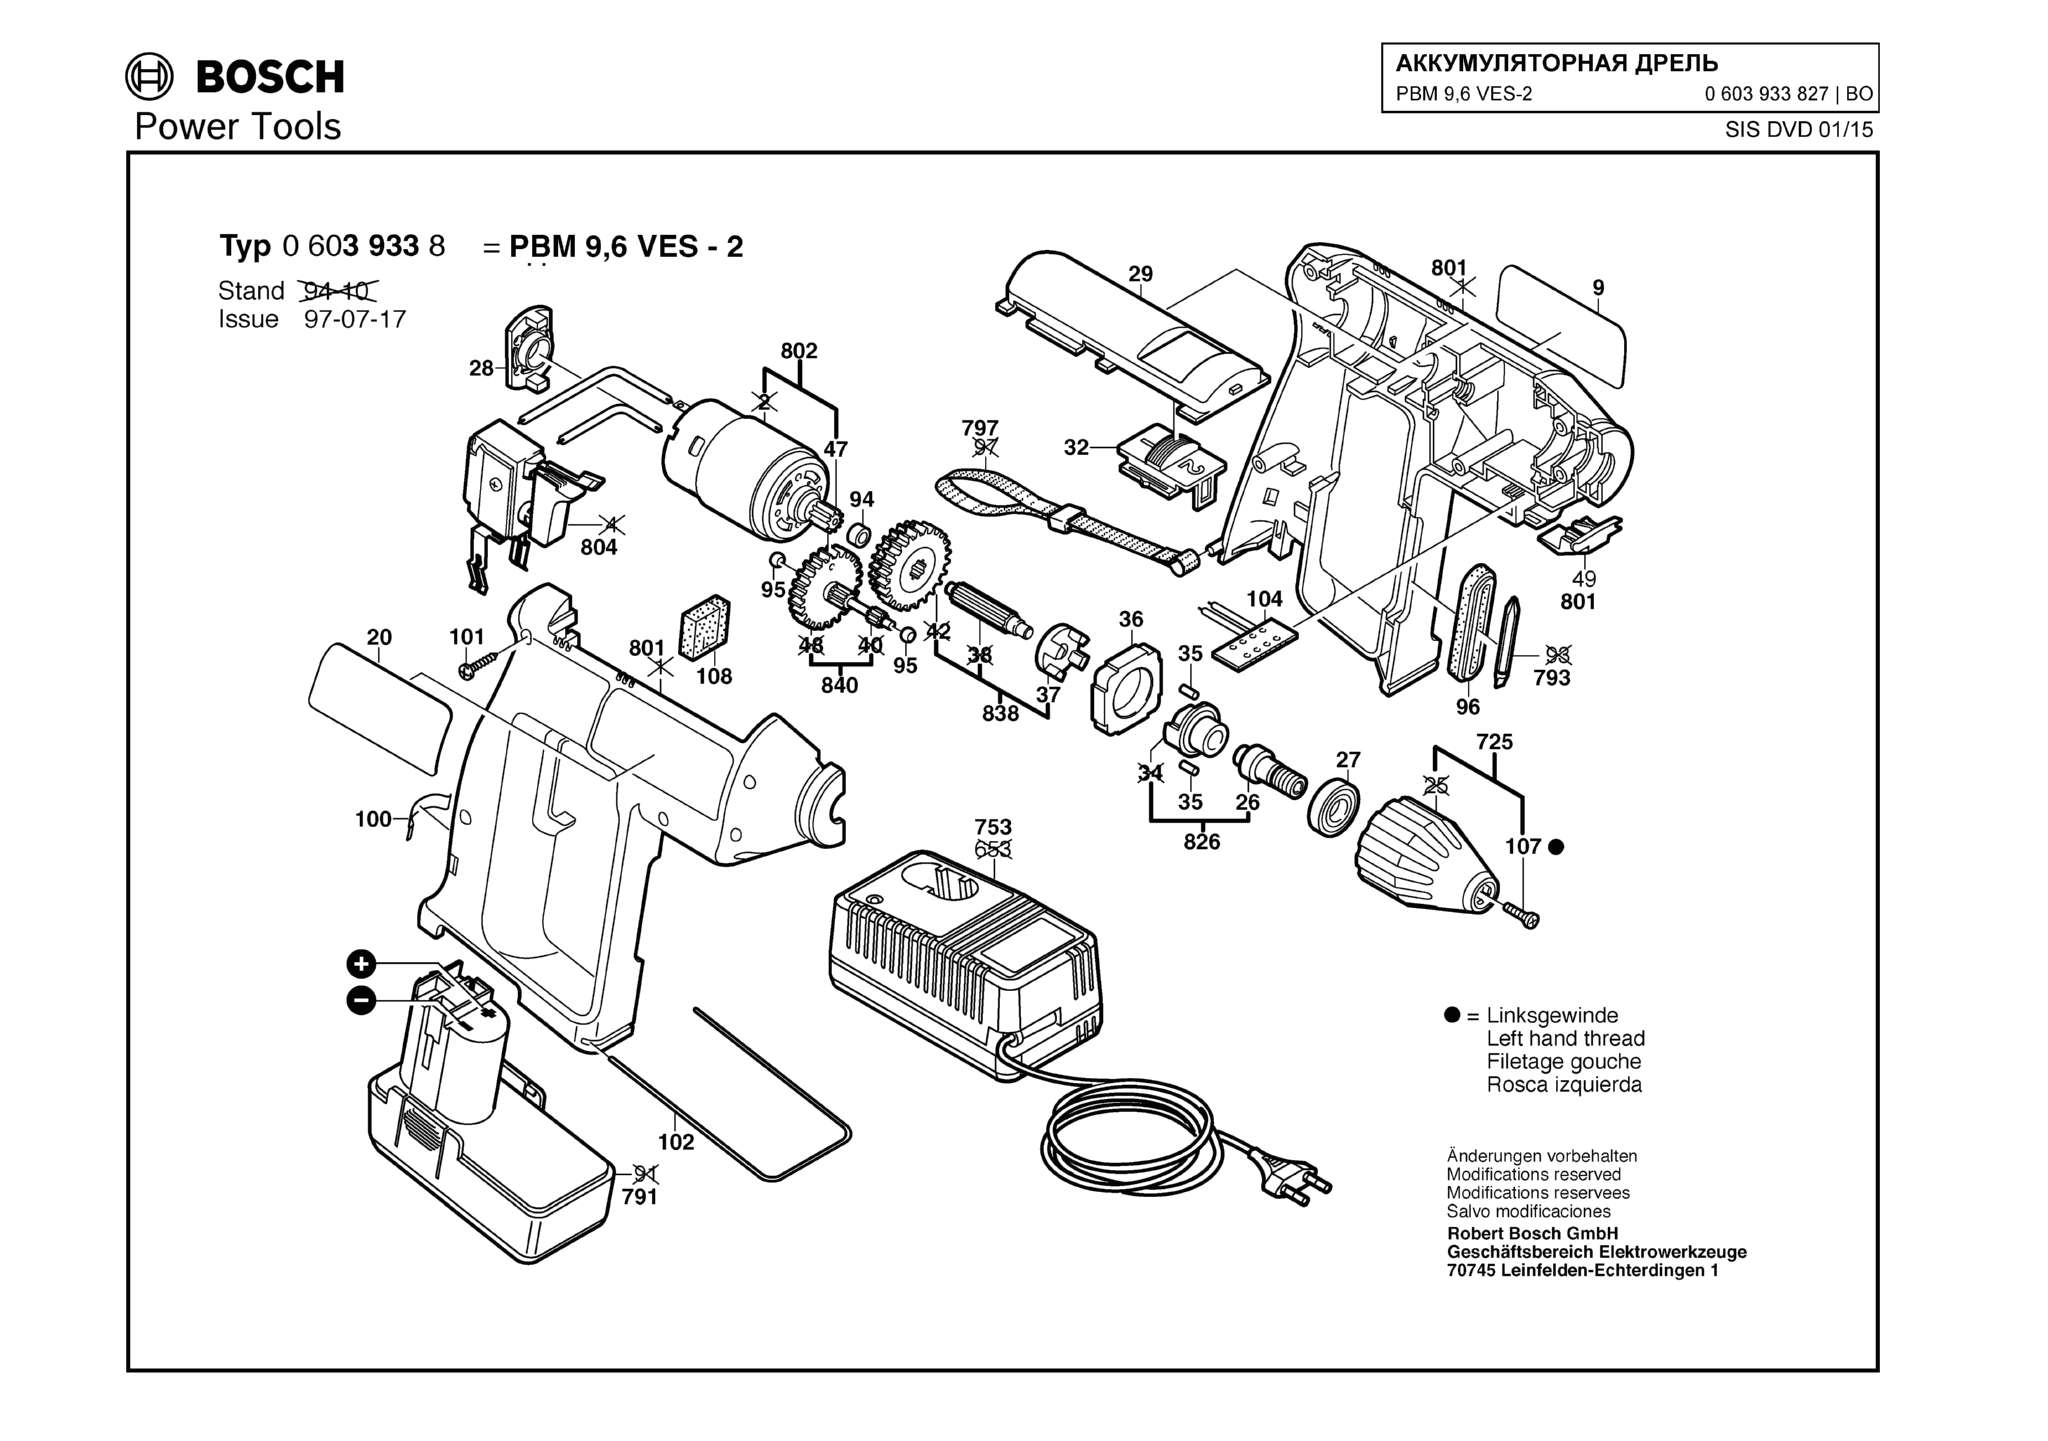 Запчасти, схема и деталировка Bosch PBM 9,6 VES-2 (ТИП 0603933827)